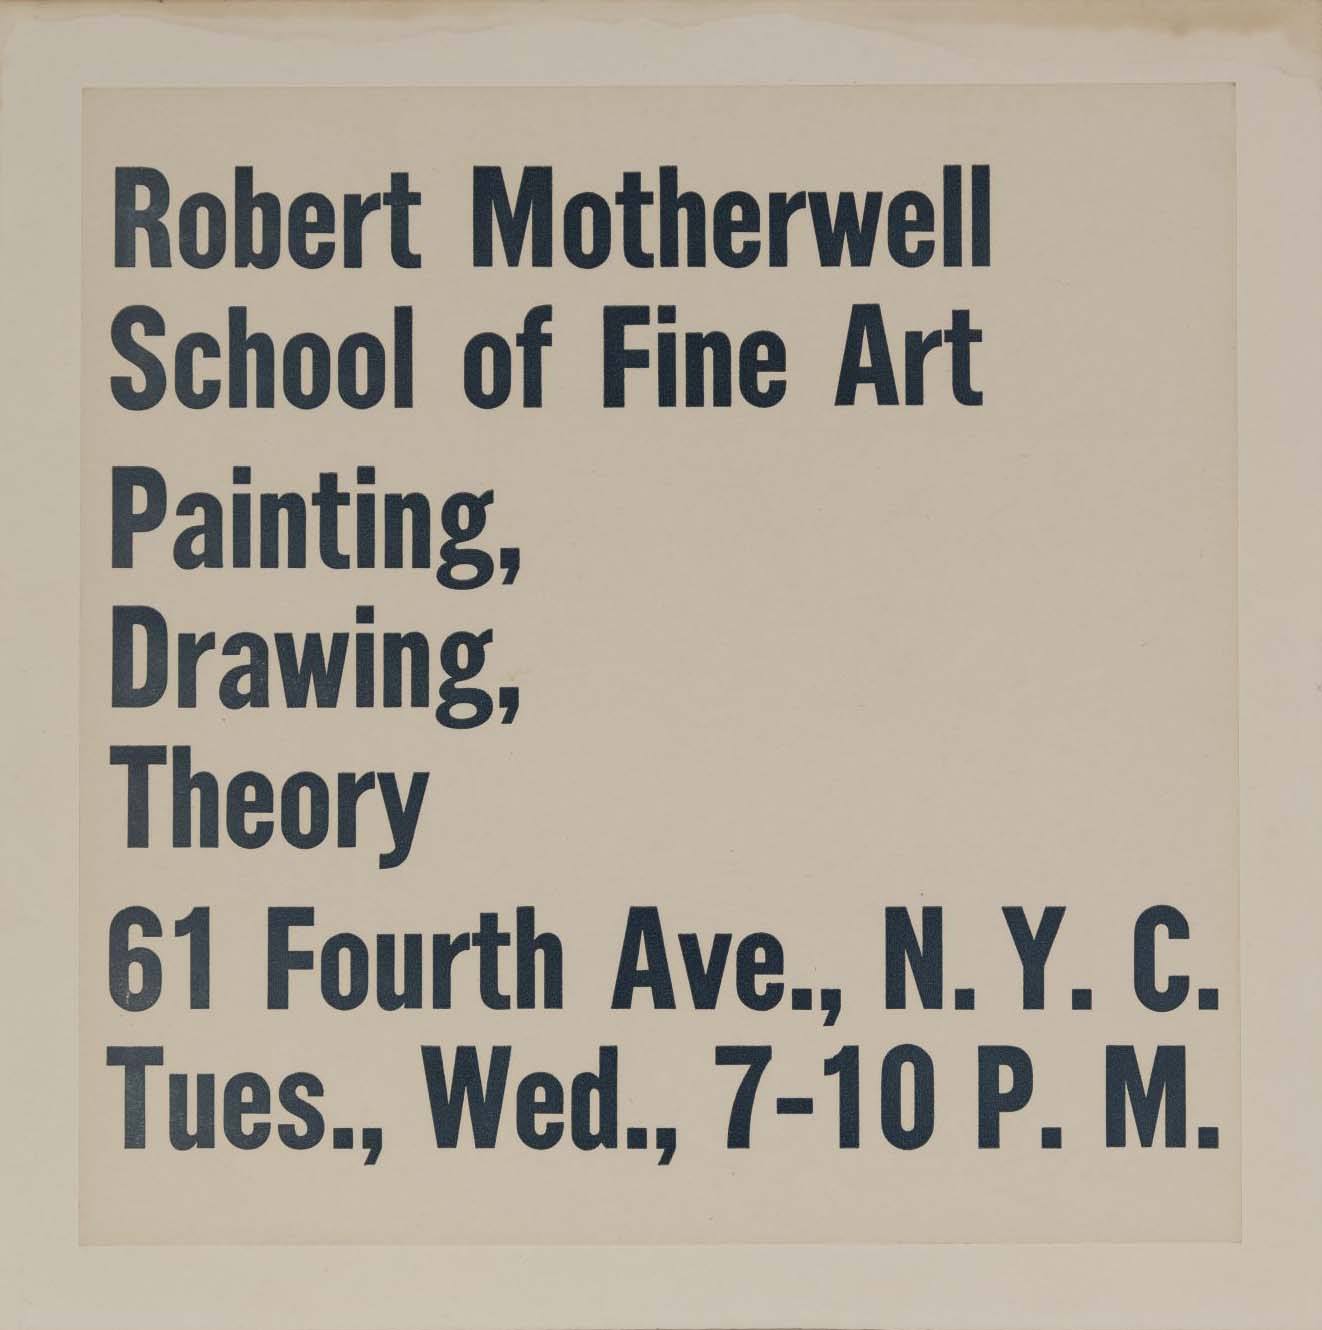 Advertisement for the Robert Motherwell School of Fine Art, 1949